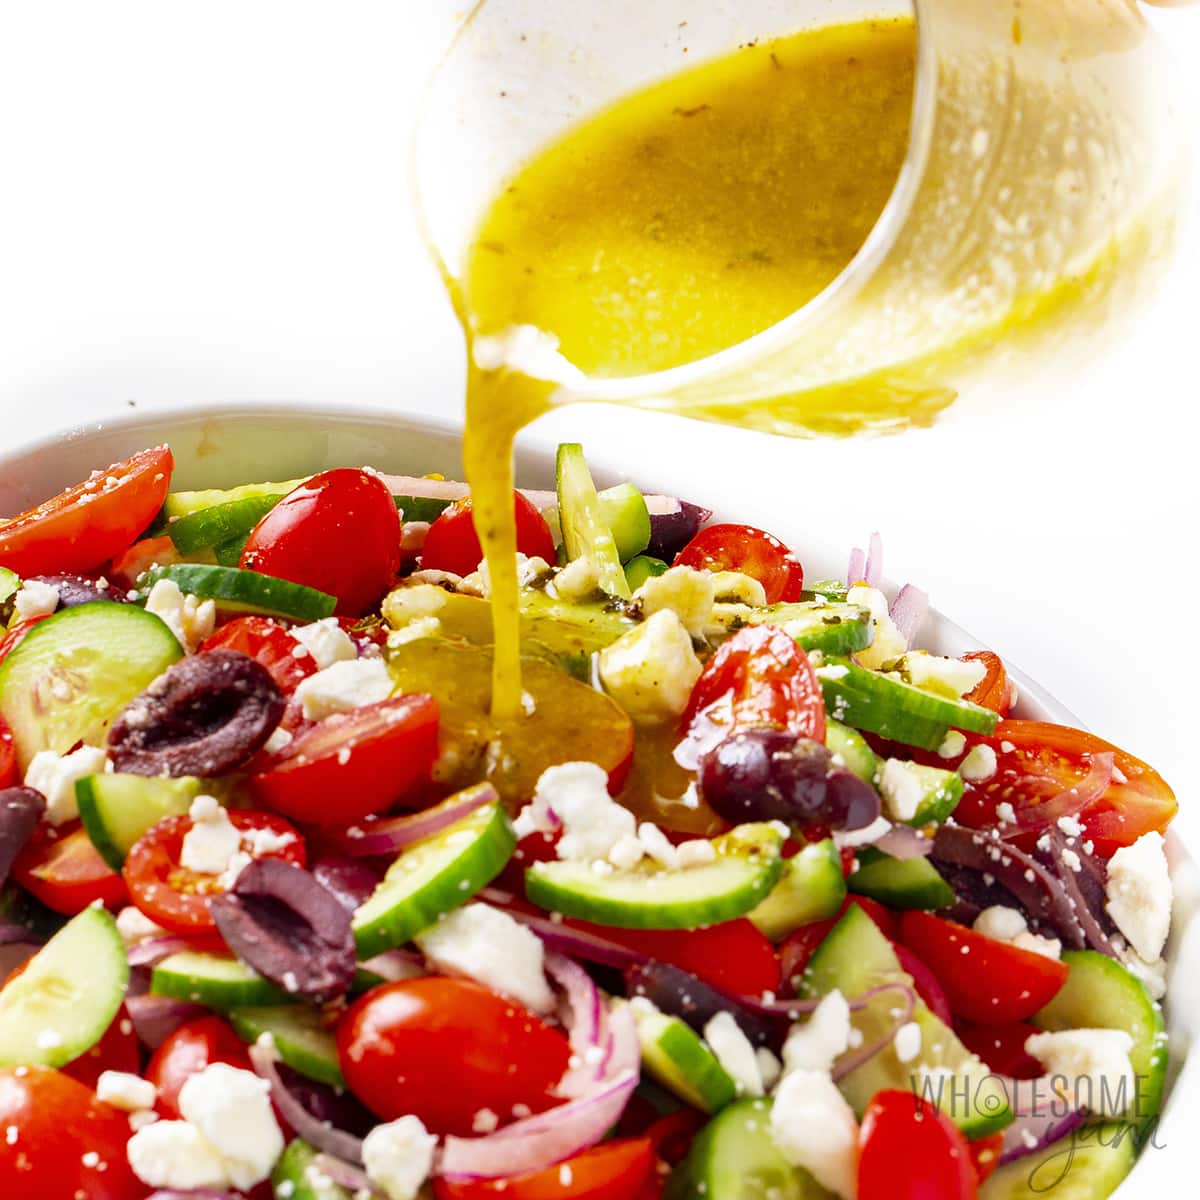 Greek salad dressing pouring over salad.